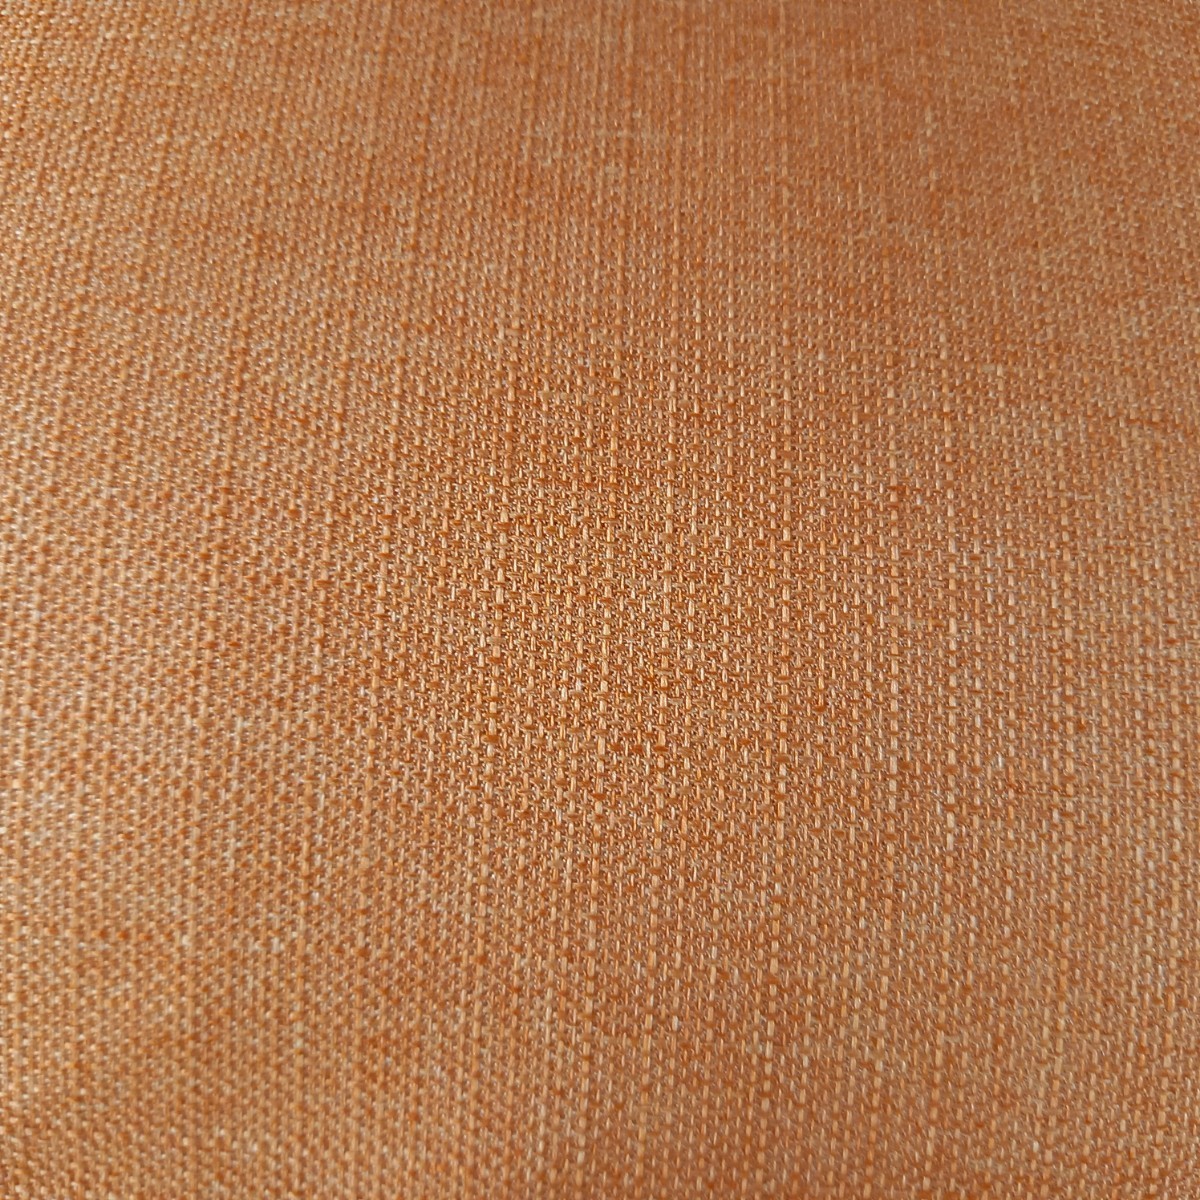  супер водоотталкивающая отделка большой размер квадратный котацу futon толщина .. толстый ткань orange котацу чистый безопасность сделано в Японии ( пуховый футон ватное одеяло матрас футон подушка ) и т.п. выставляется..